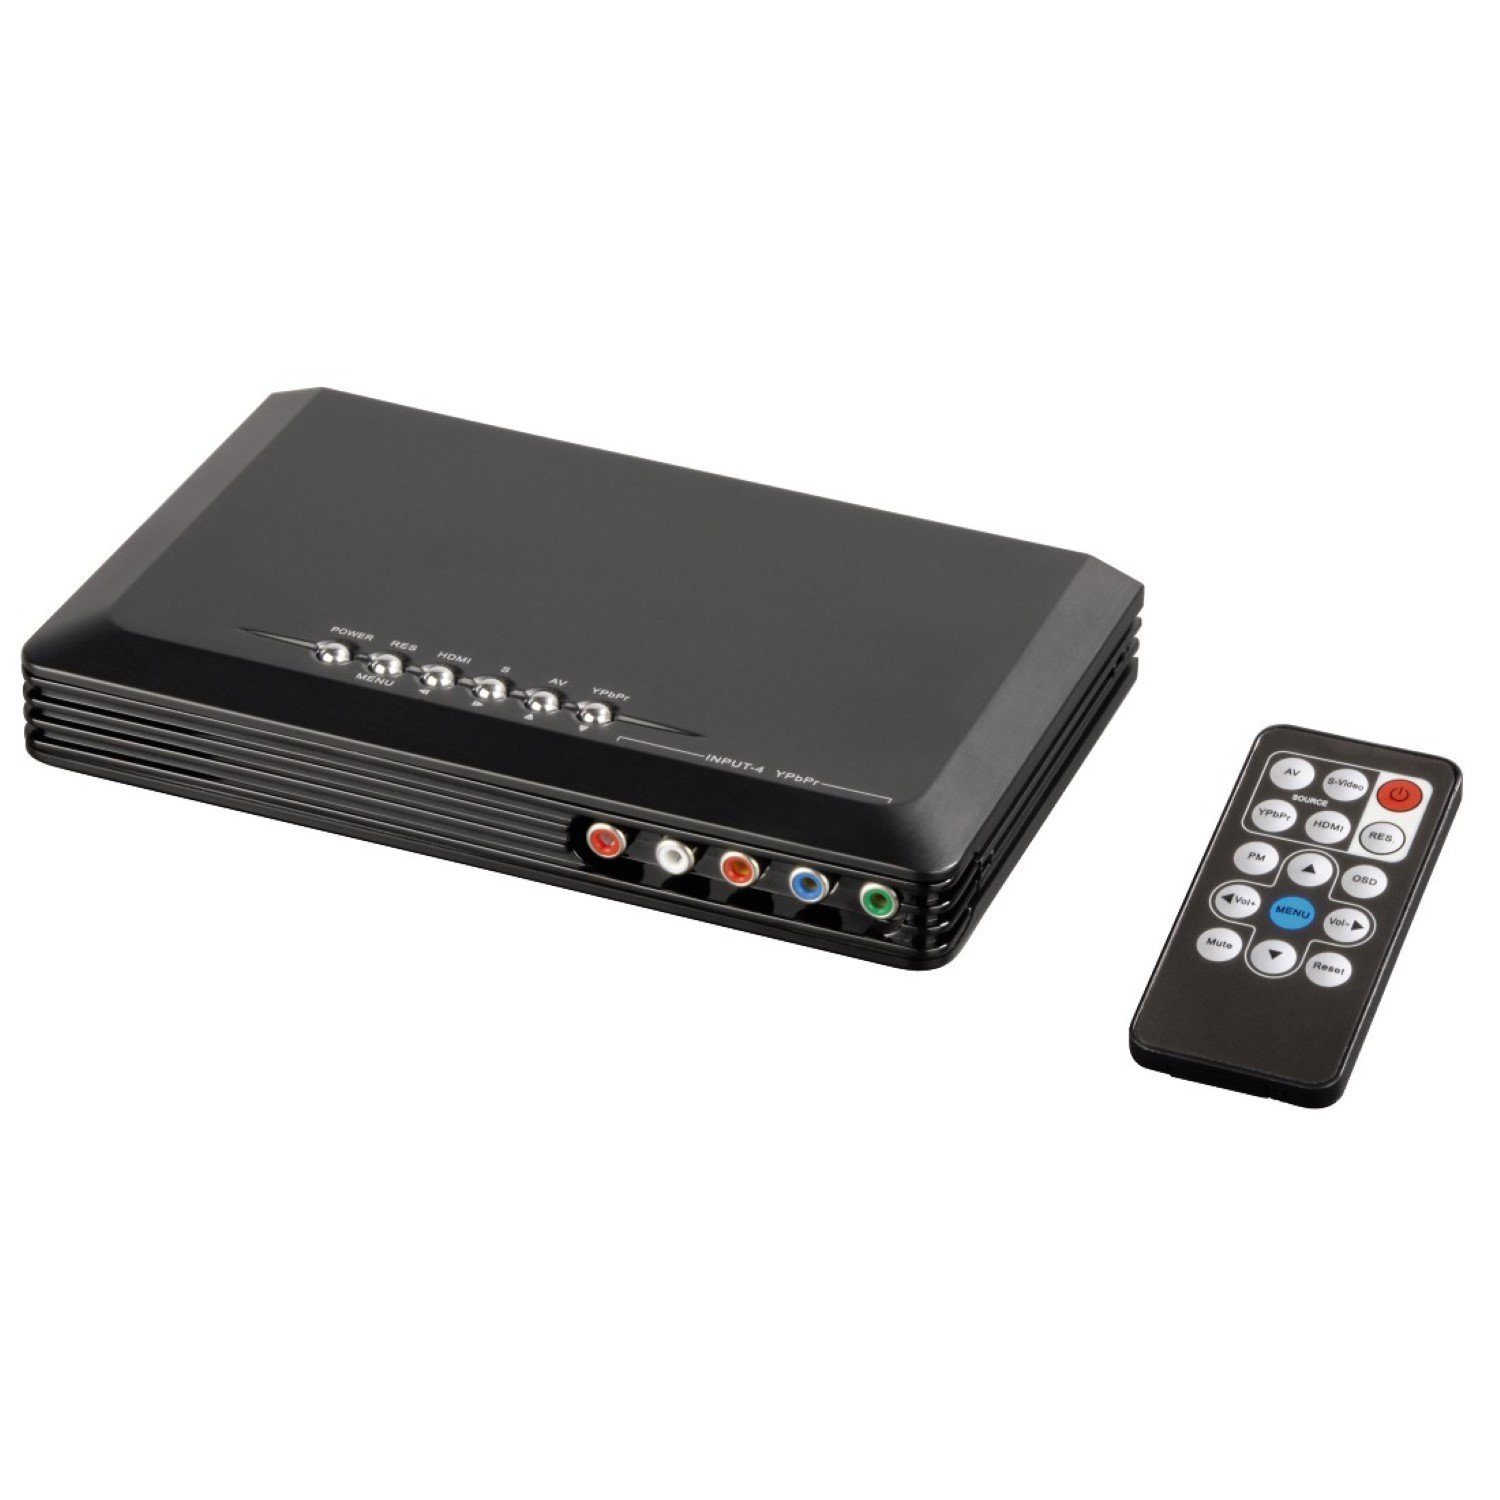 Hama Video Konverter 4in1 Skalierer HDMI Adapter Video-Adapter Kein zu HDMI, S-Video, YUV Component, Composite, YUV Component S-Video Cinch Composite auf Full-HD 1080p skaliert